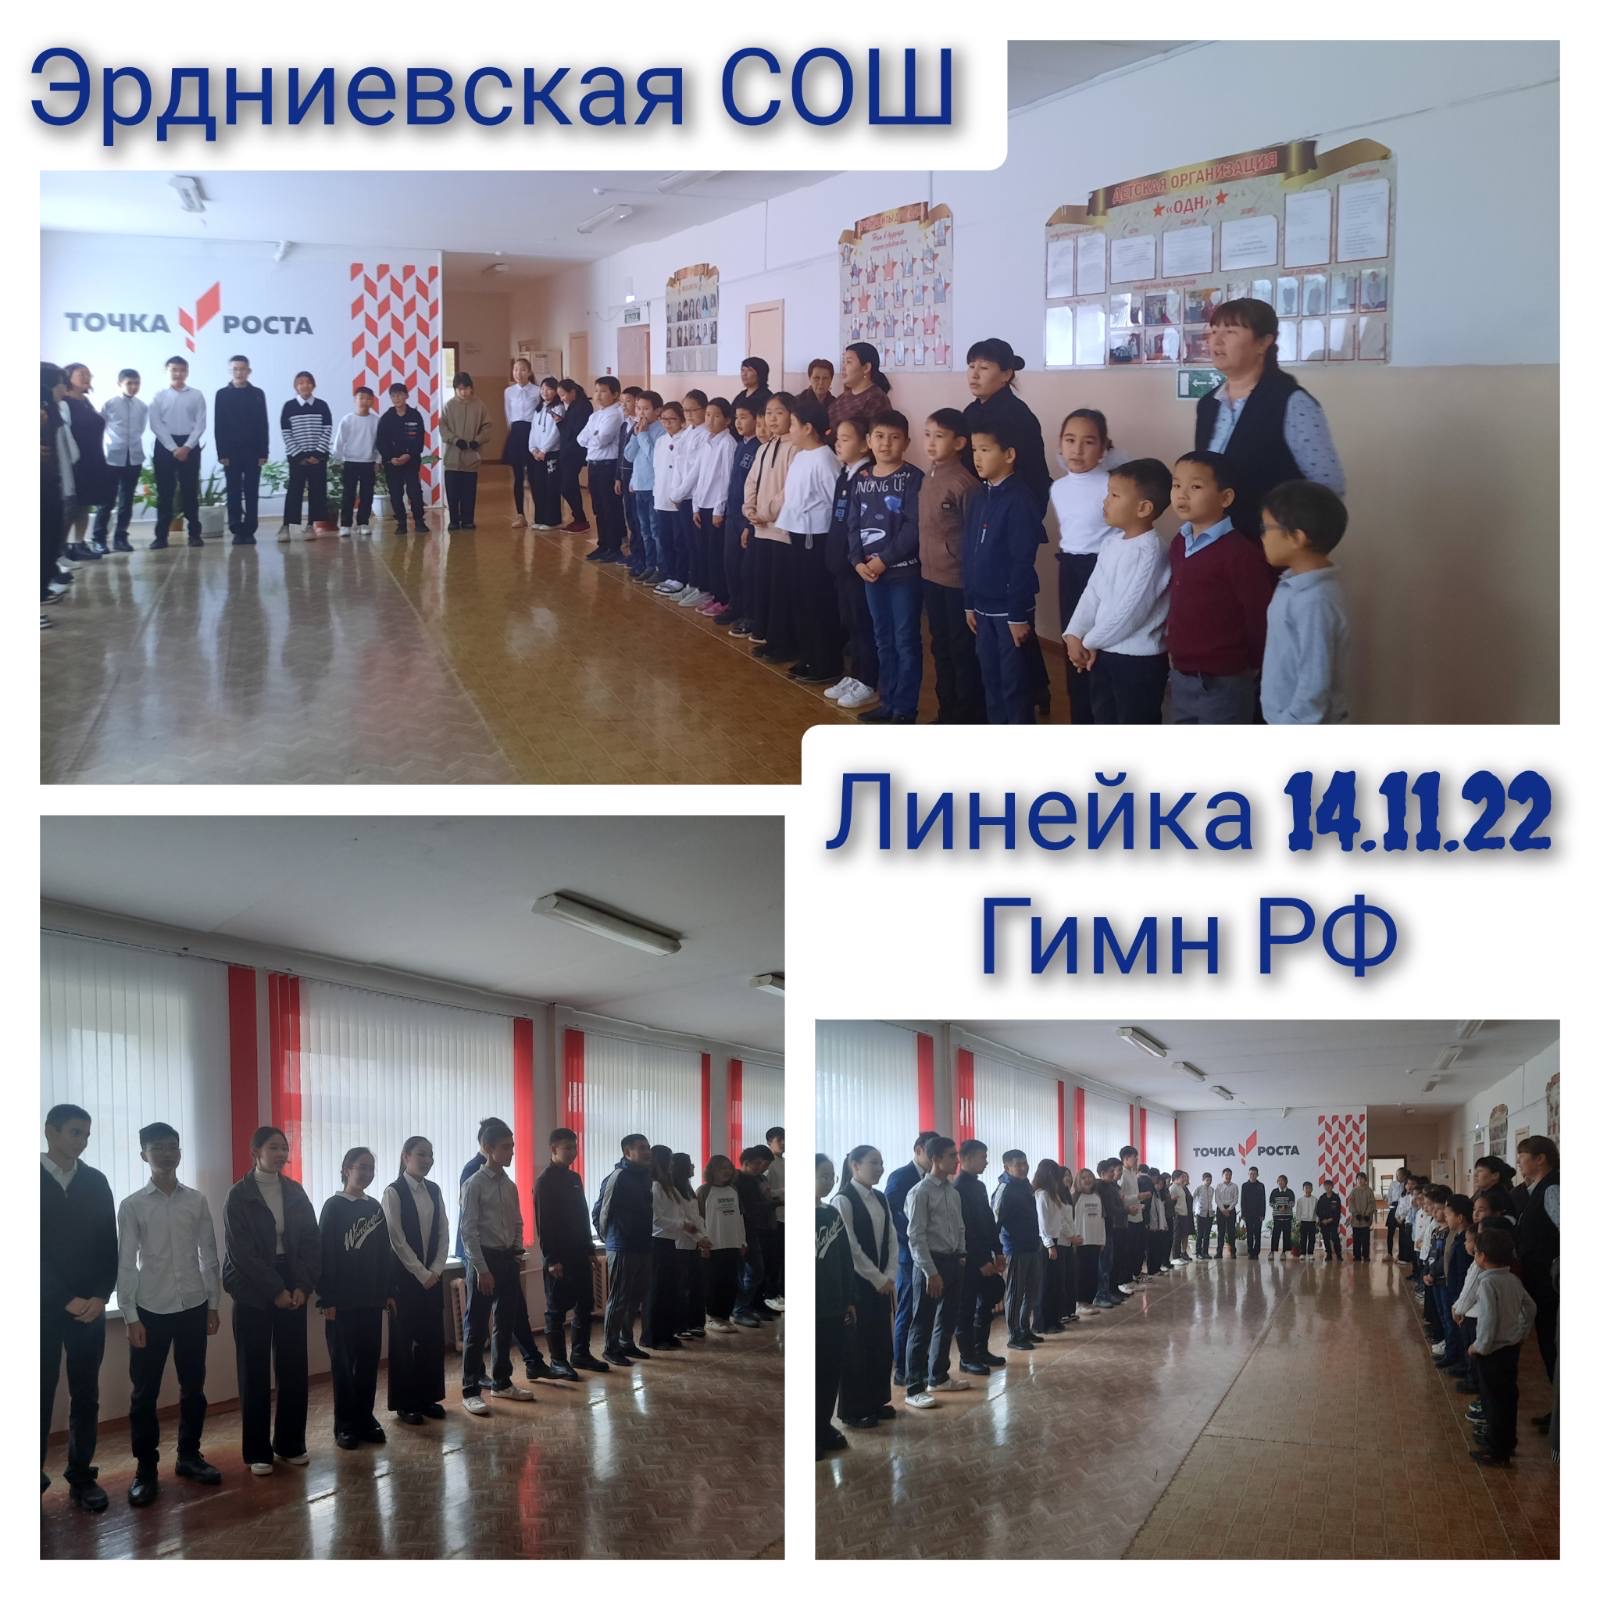 Церемония поднятия флага РФ в школе.